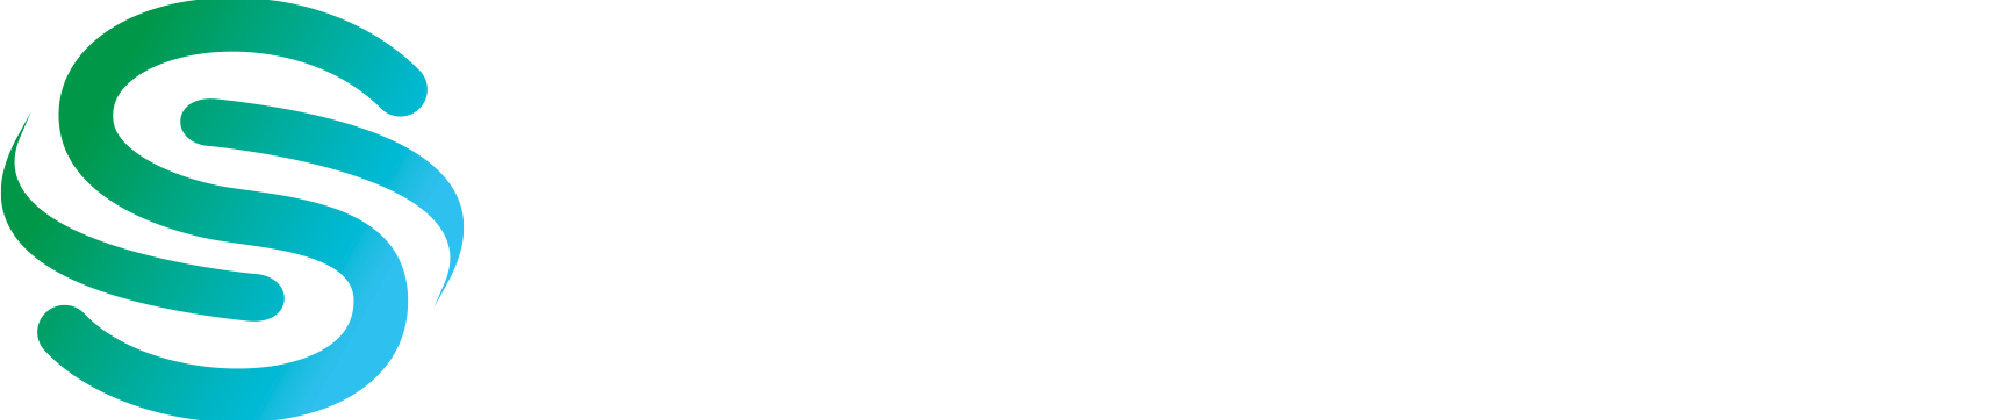 数悦logo